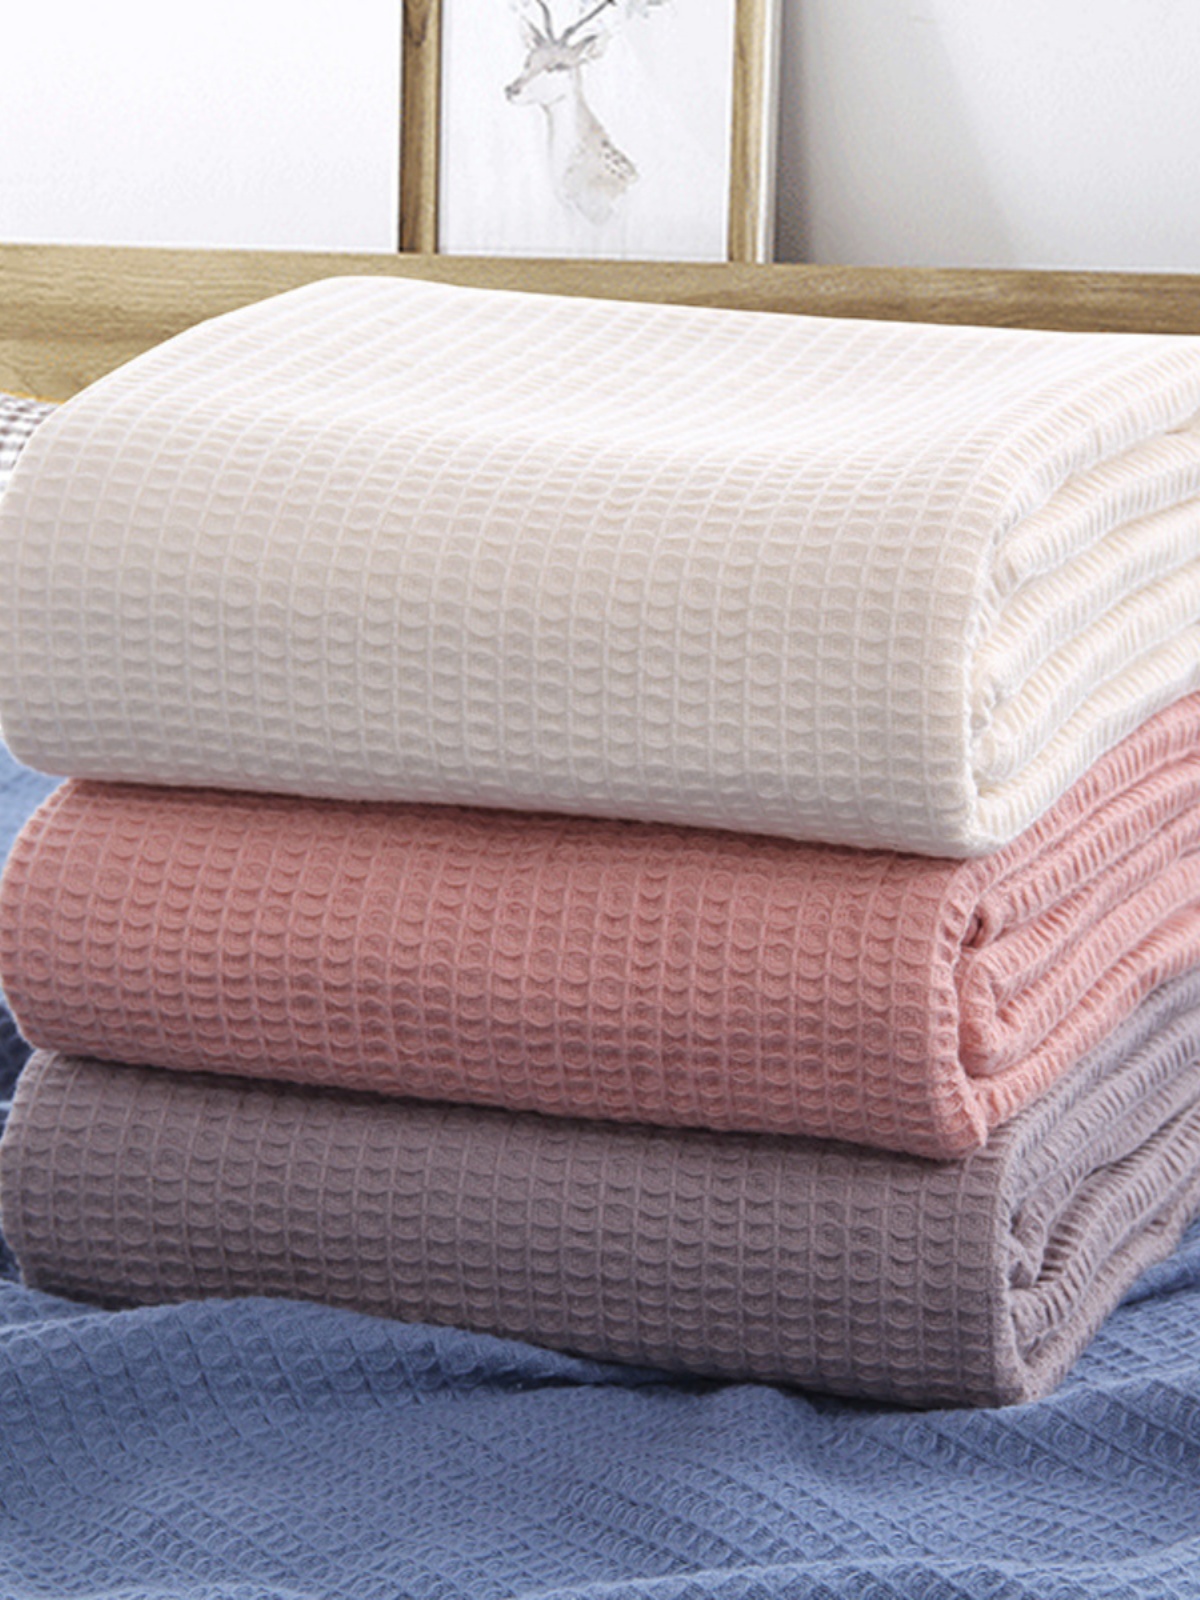 現代簡約純棉蜂巢蓋毯舒適透氣四季沙發蓋毯